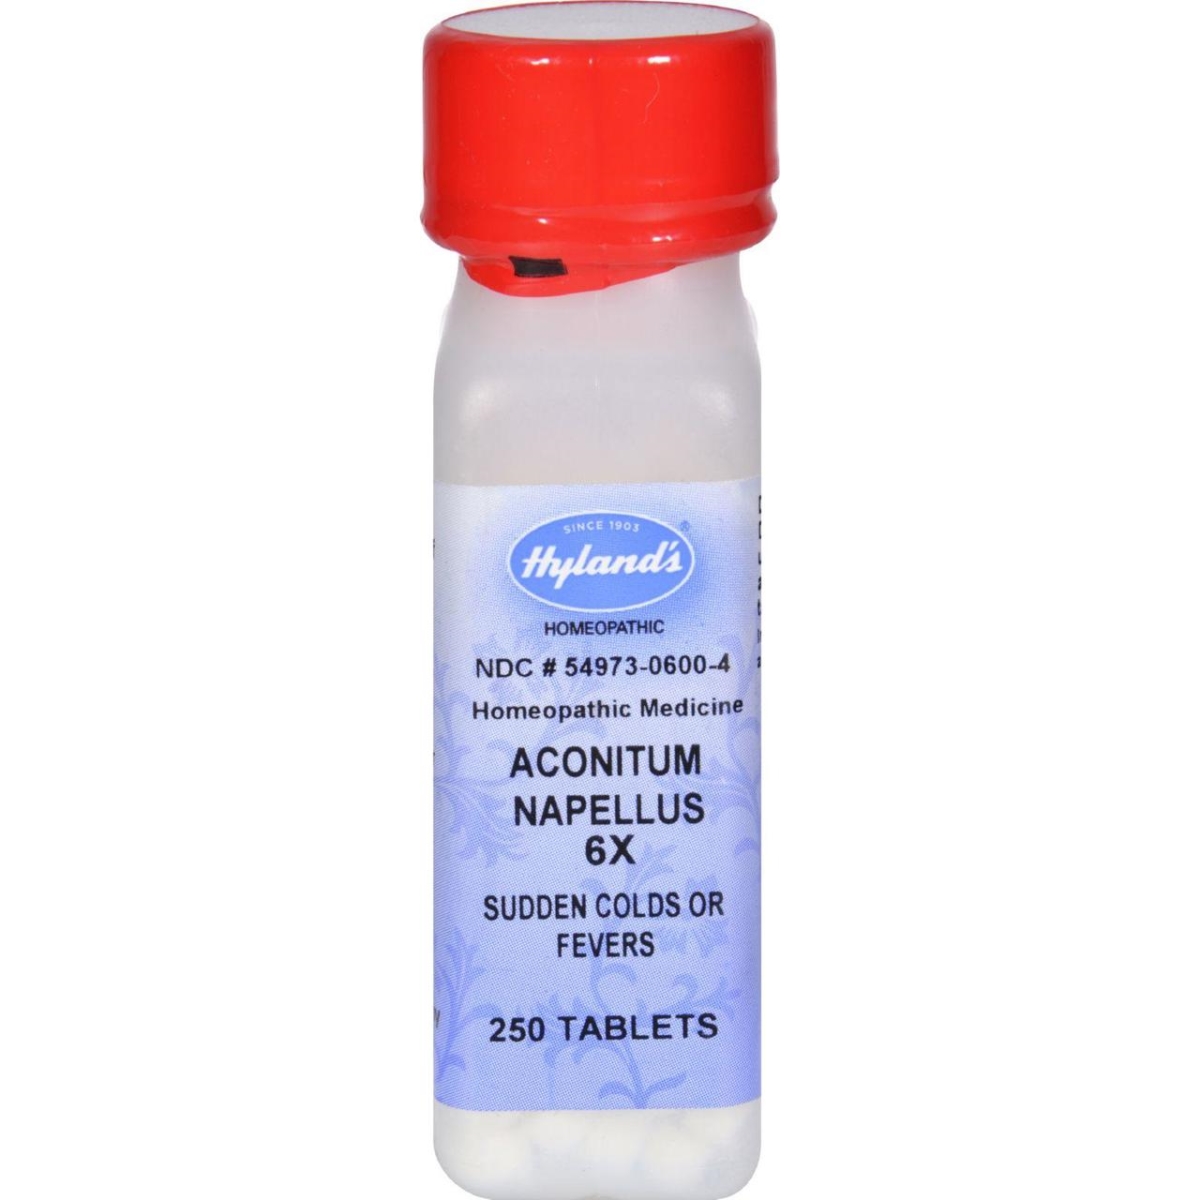 Hg0778548 Aconitum Napellus 6x - 250 Tablets